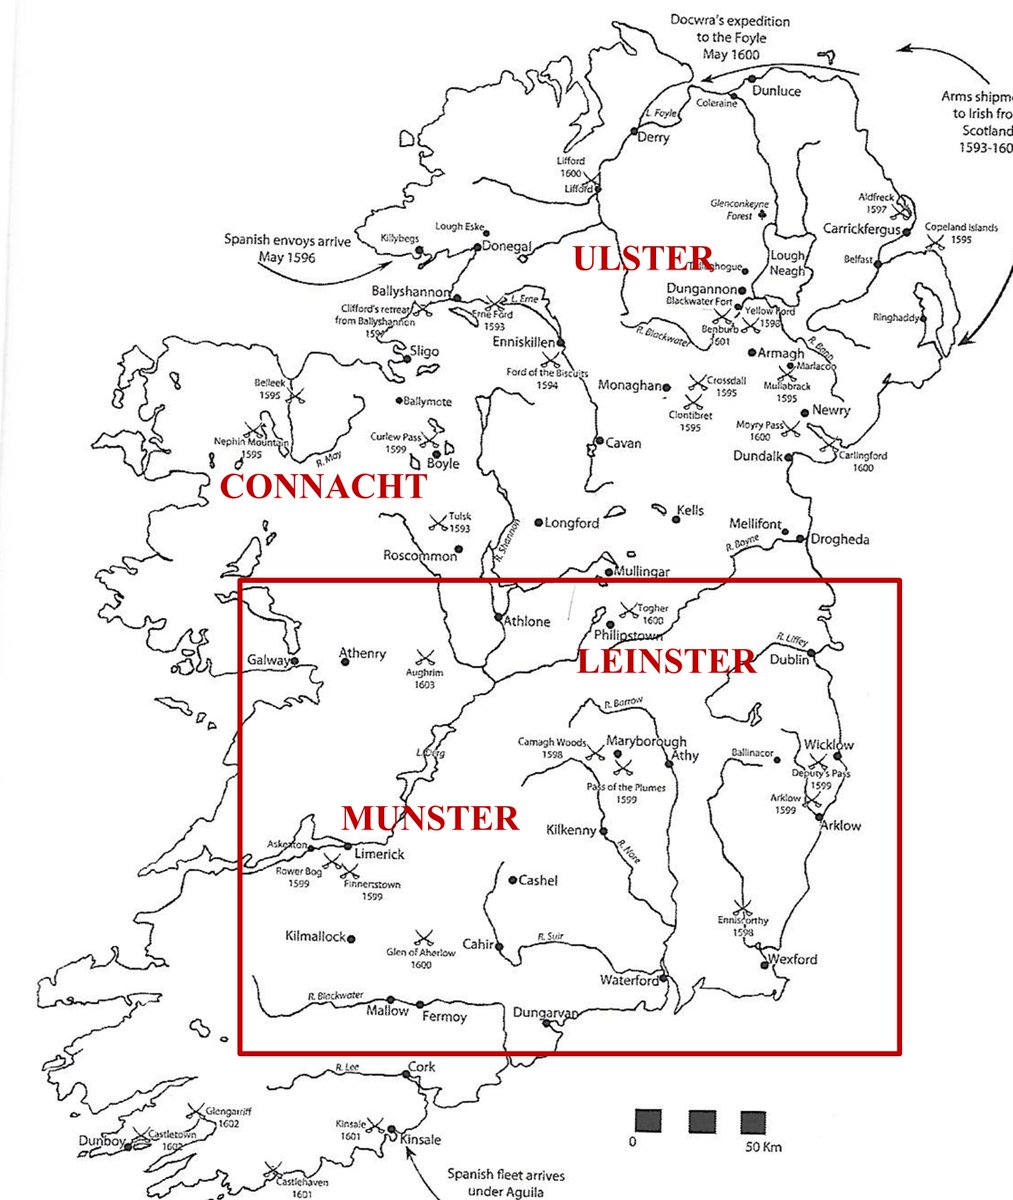 En el mes de mayo el conde de Essex inició una campaña que se alargaría hasta el mes de julio y que tenía por objetivo pacificar la provincia de Munster.